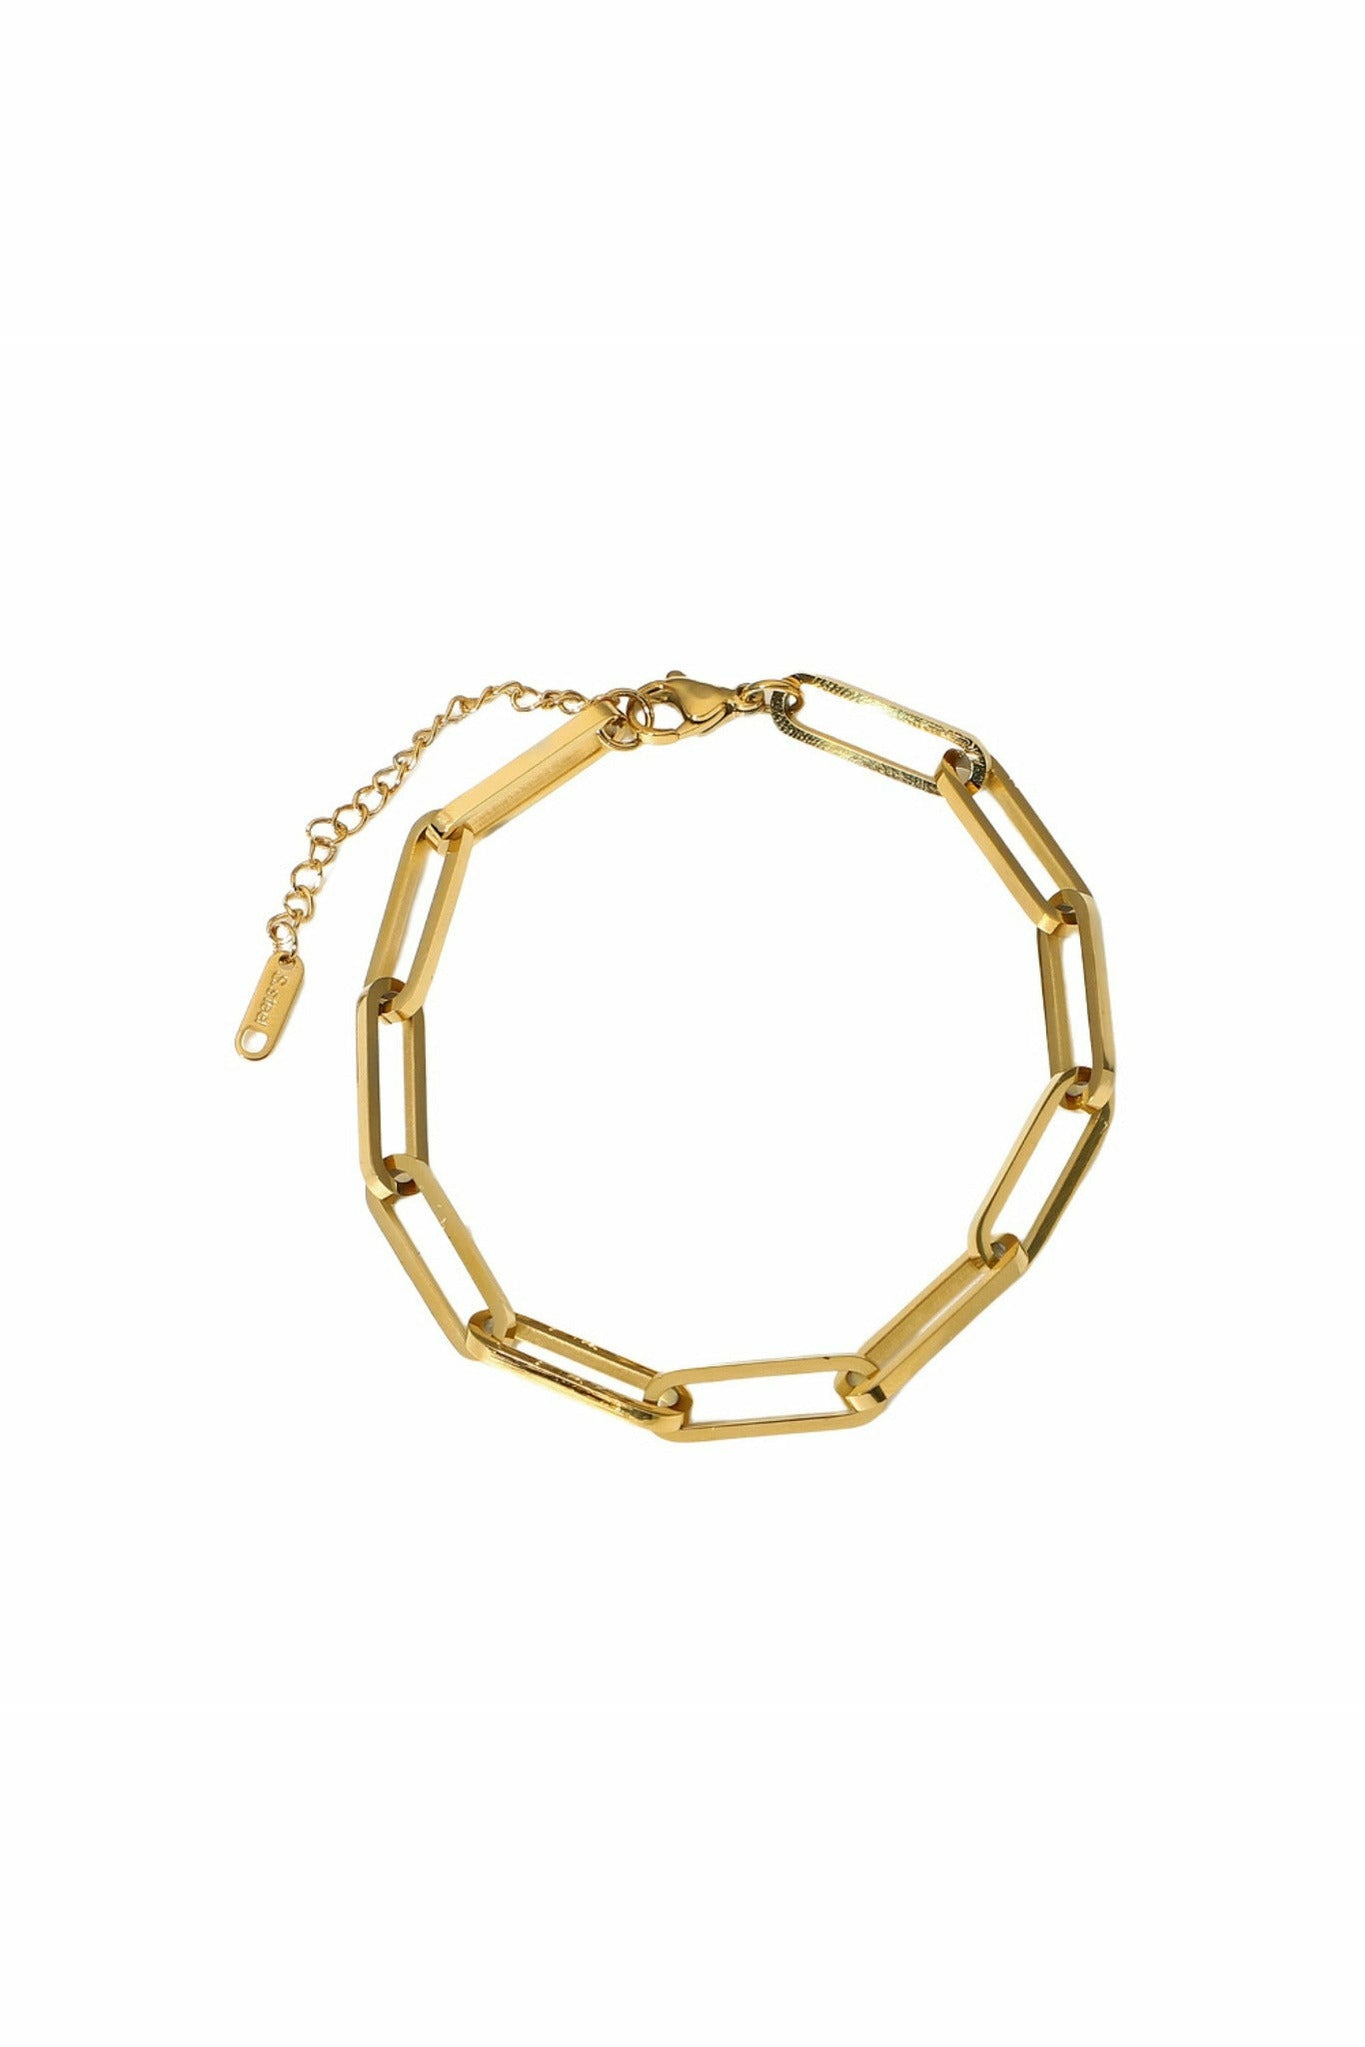 Long Links Bracelet In Gold BLN16G